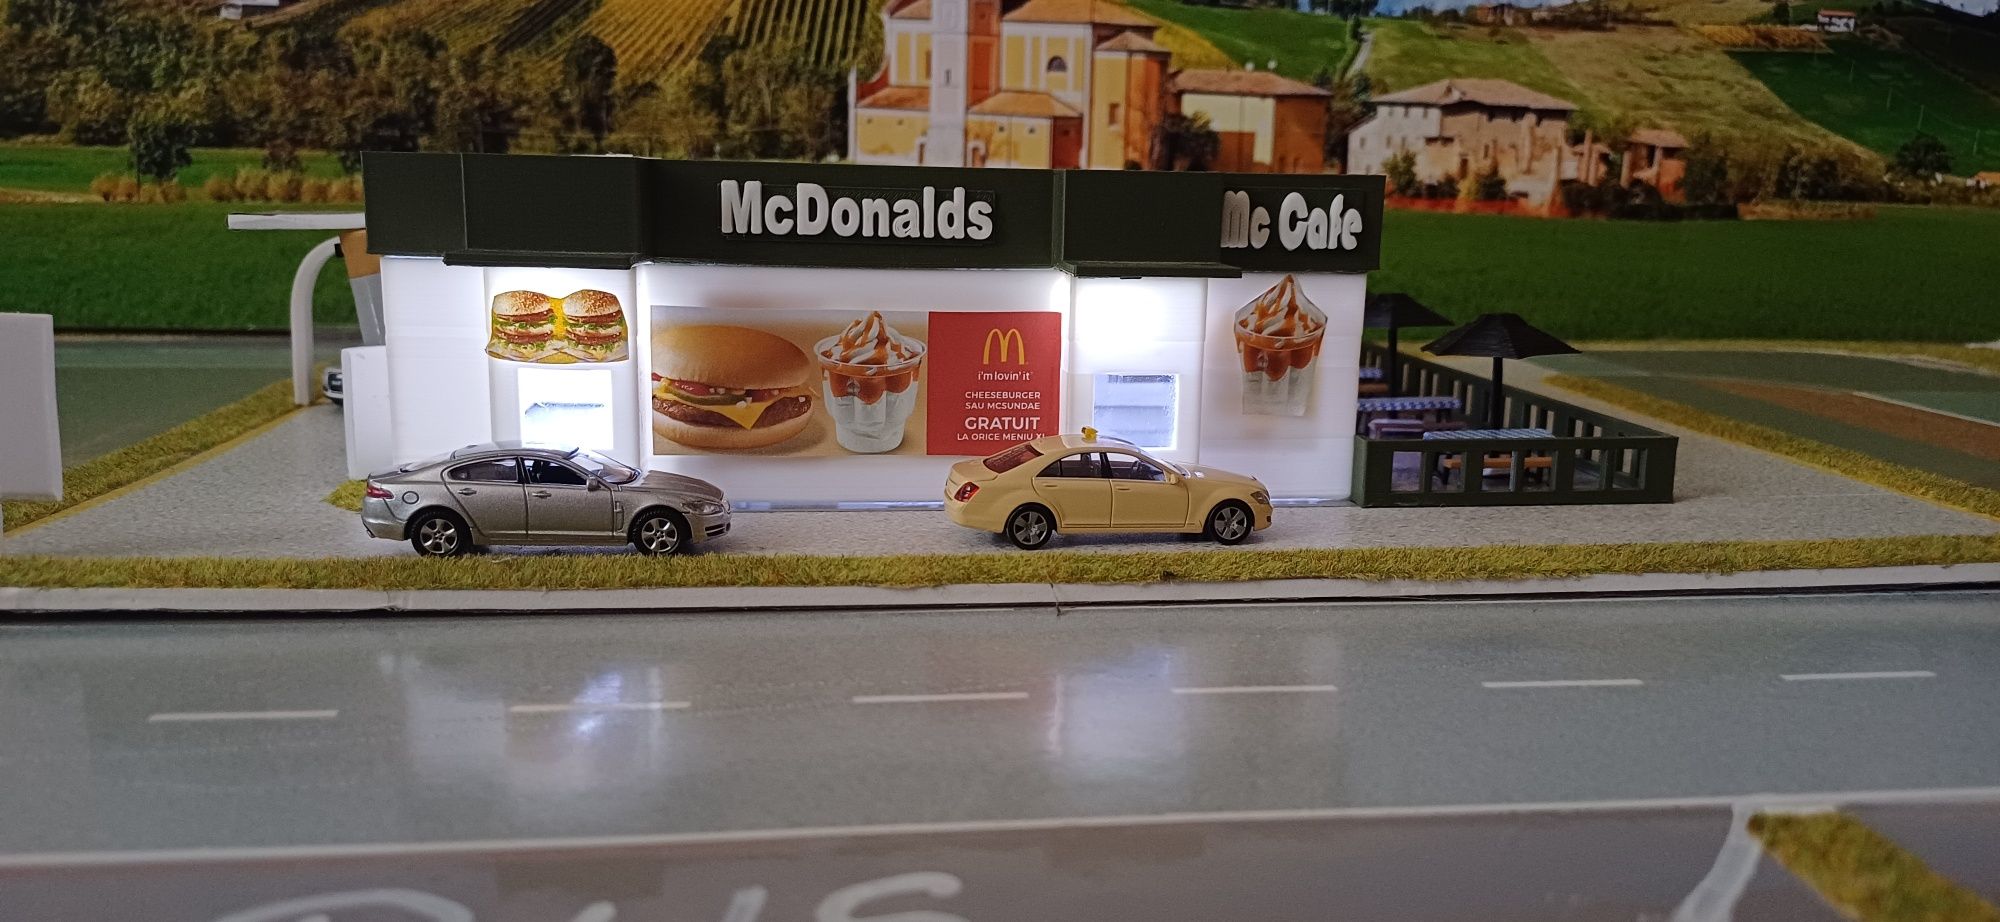 Macheta McDonalds scara 1.87